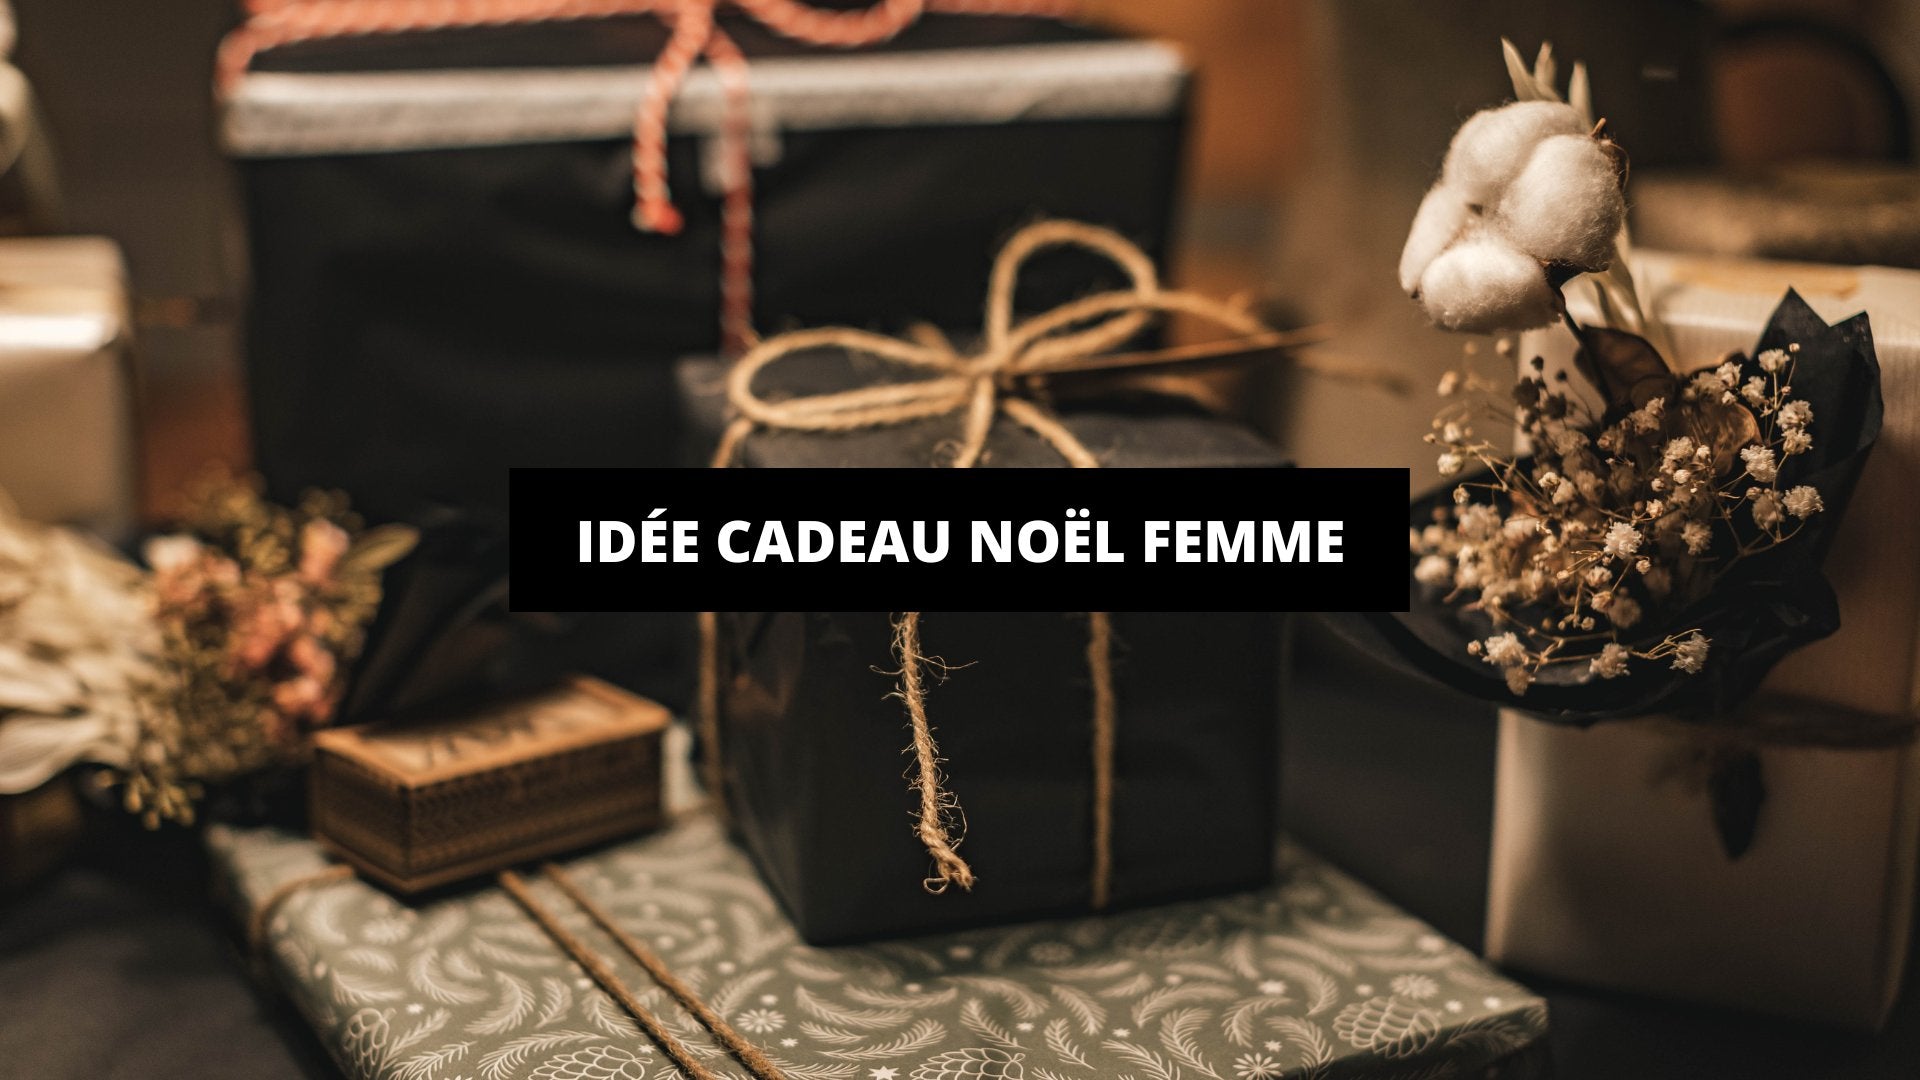 Idée Cadeau Pour Noel : La Carte Cadeau Photo - Séance photo - Cours photo